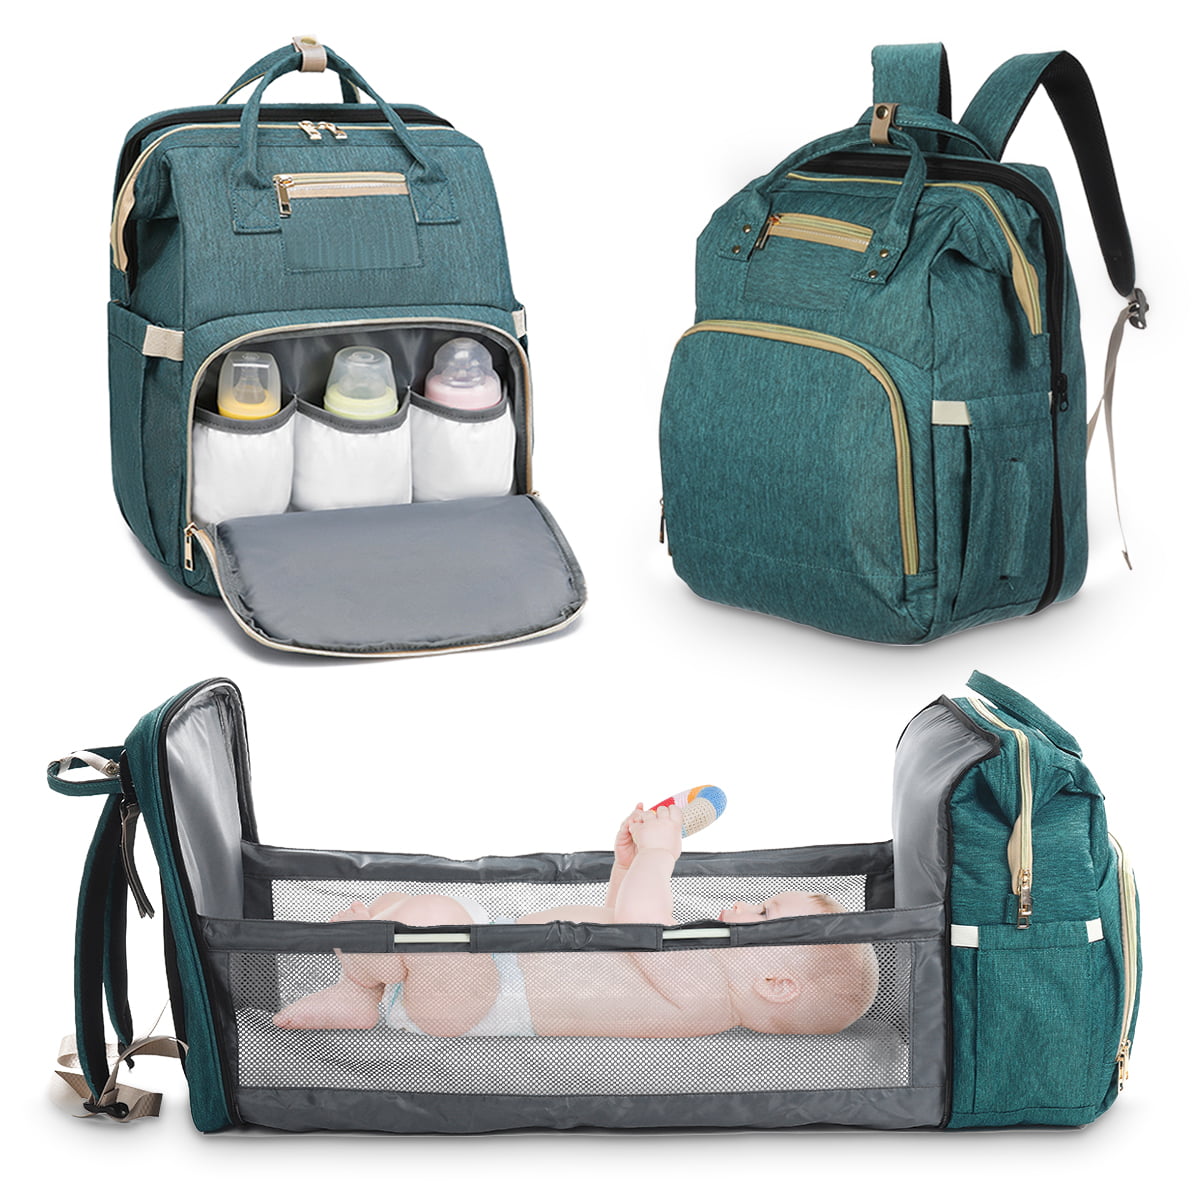 baby travel bags newborn